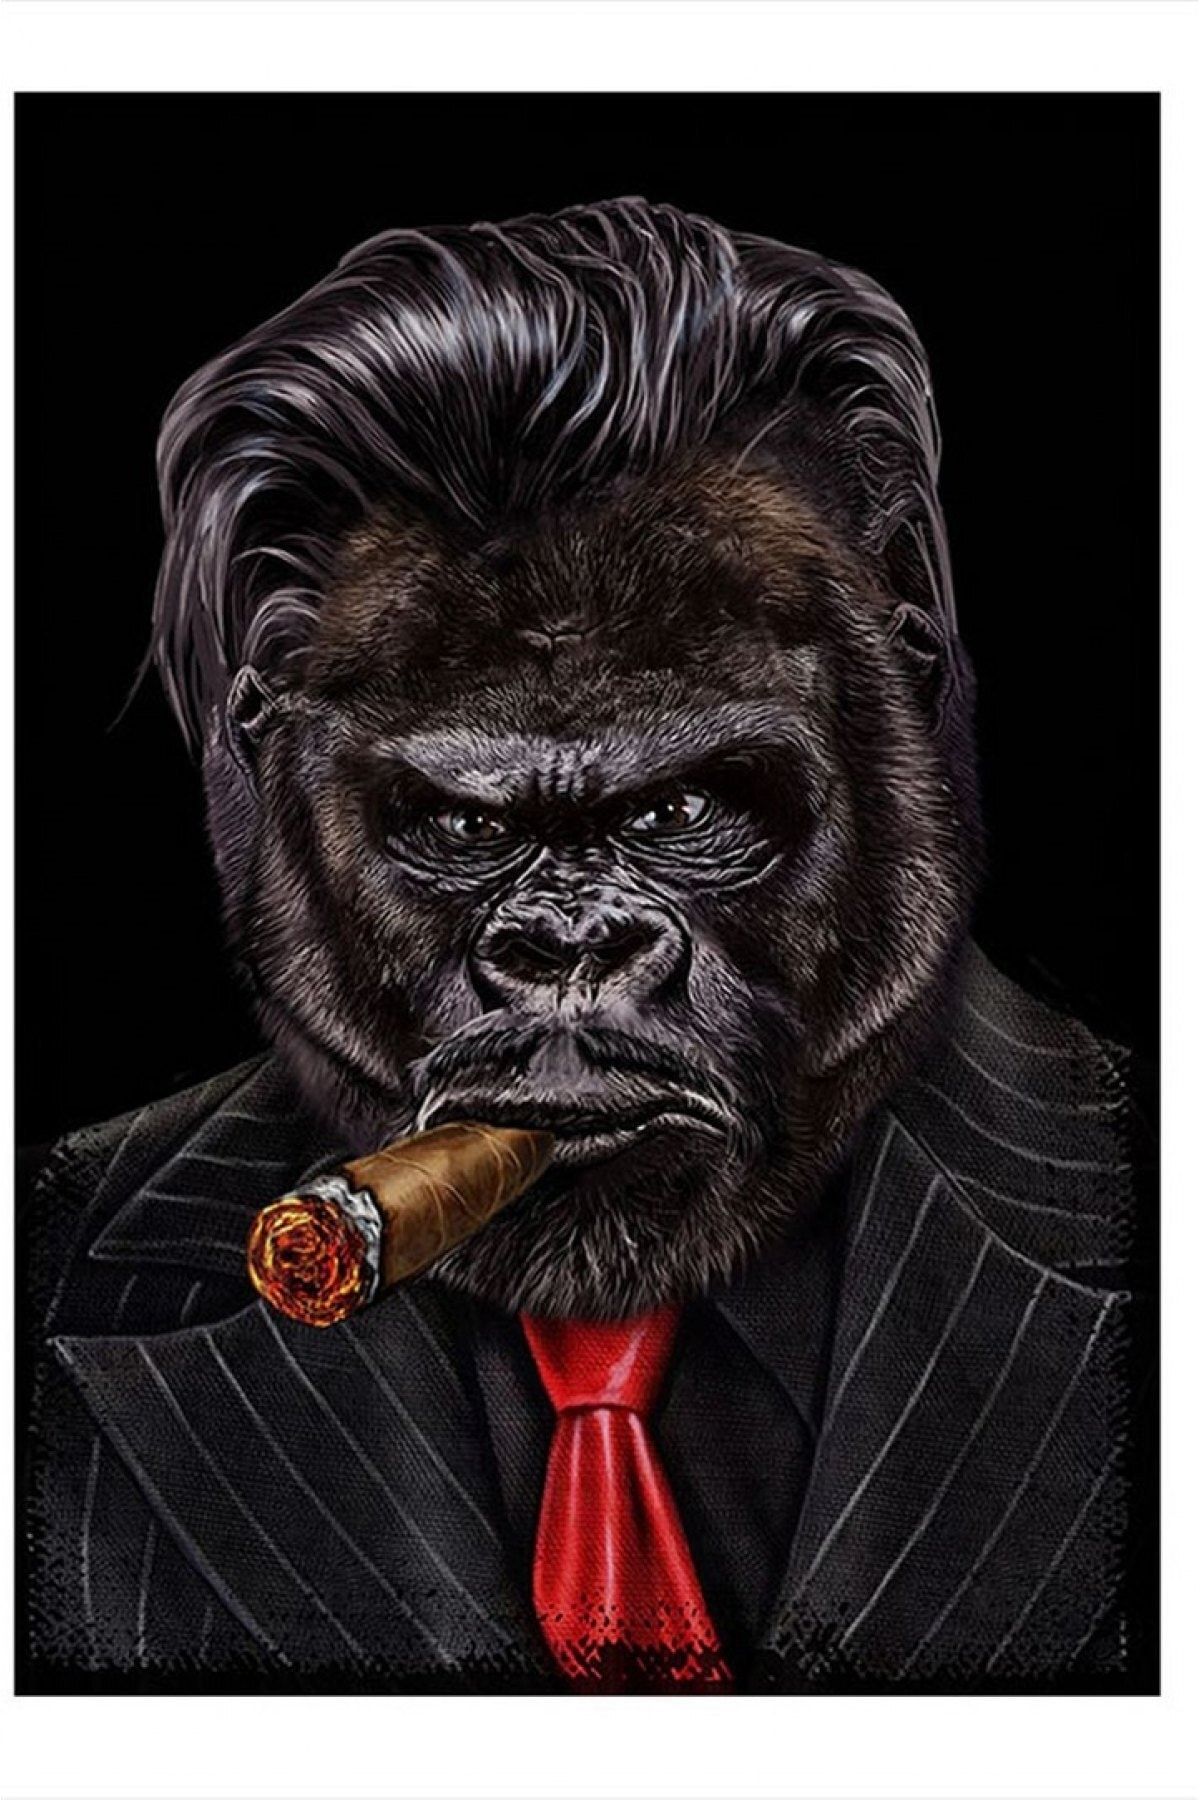 ekart Pro Sigara Içen Takım Elbiseli Goril Desenli Mdf Tablo 15cmx 22cm